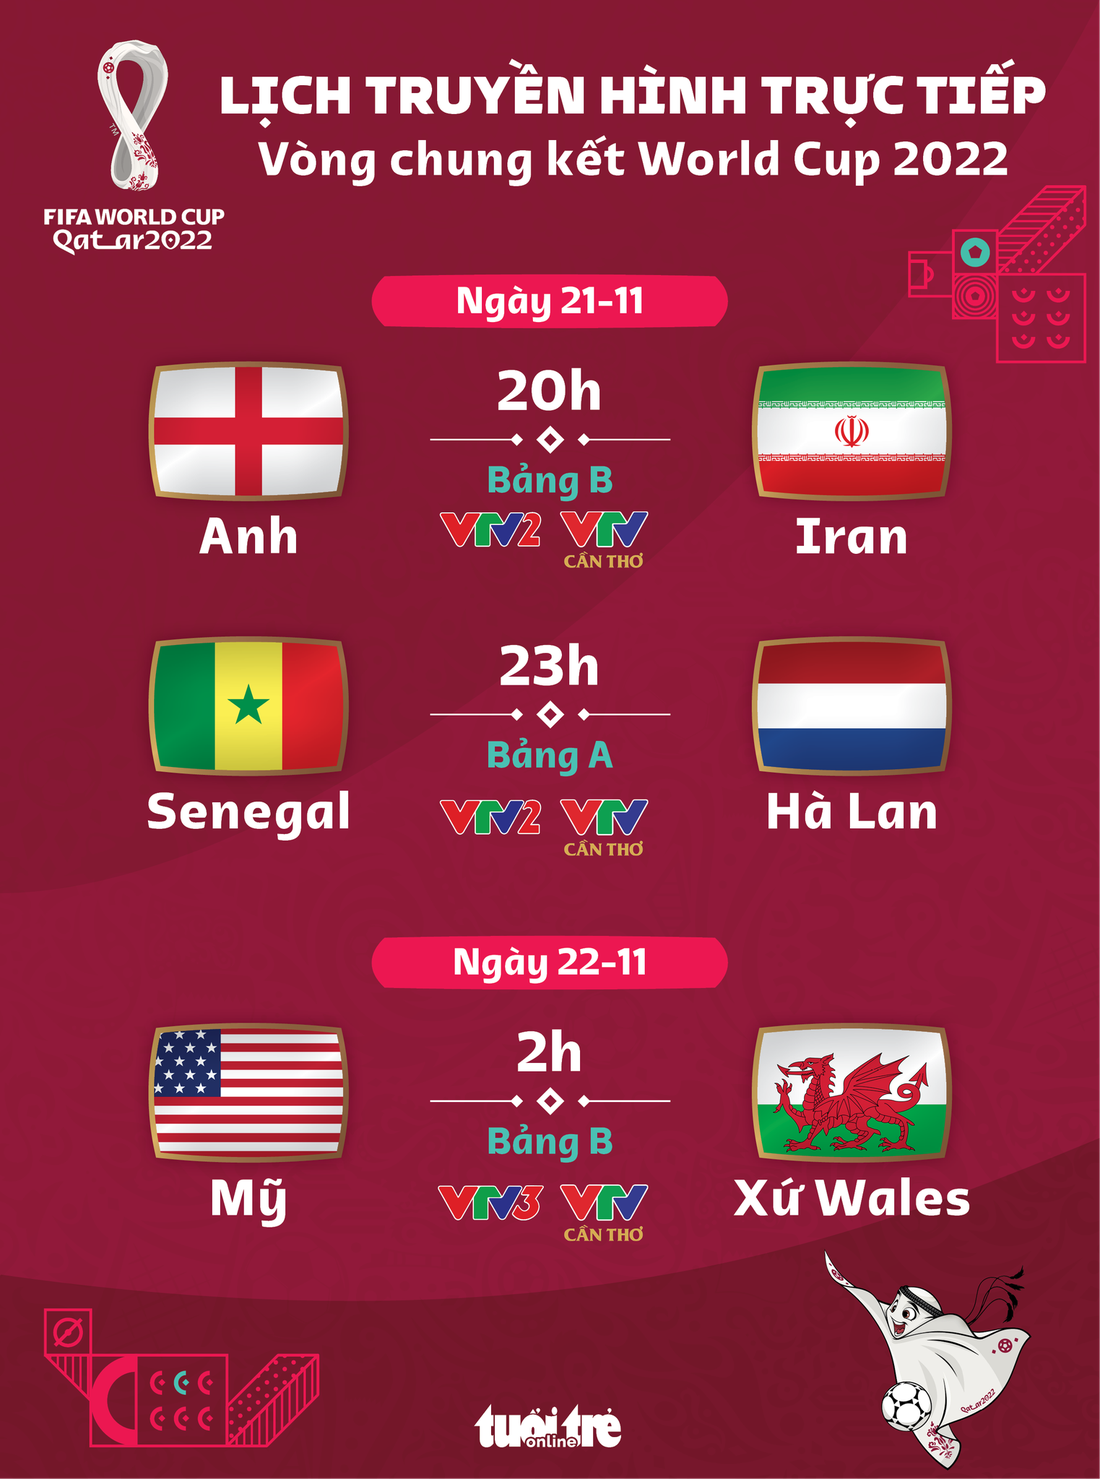 Lịch trực tiếp World Cup 2022 ngày 21-11: Anh - Iran, Senegal - Hà Lan và Mỹ - Xứ Wales - Ảnh 1.